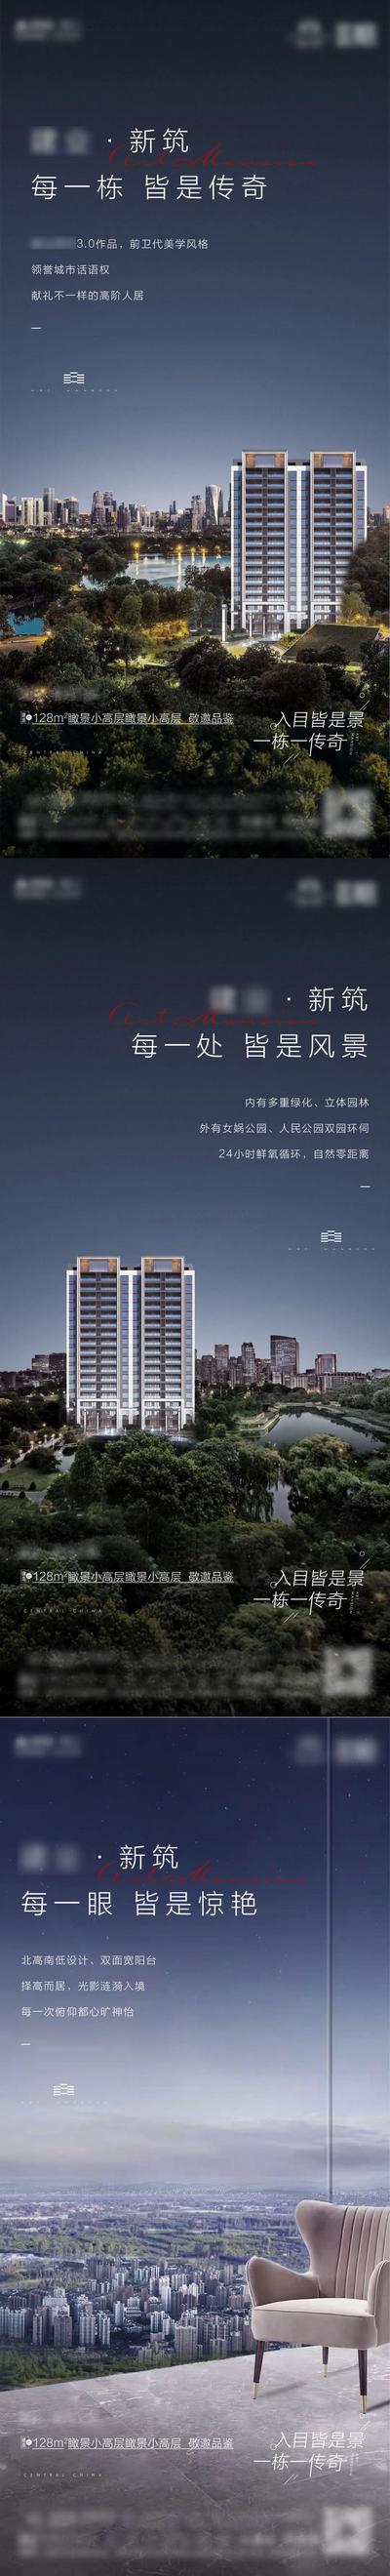 南门网 海报 地产 高层 价值点 园林 绿化 自然 阳台